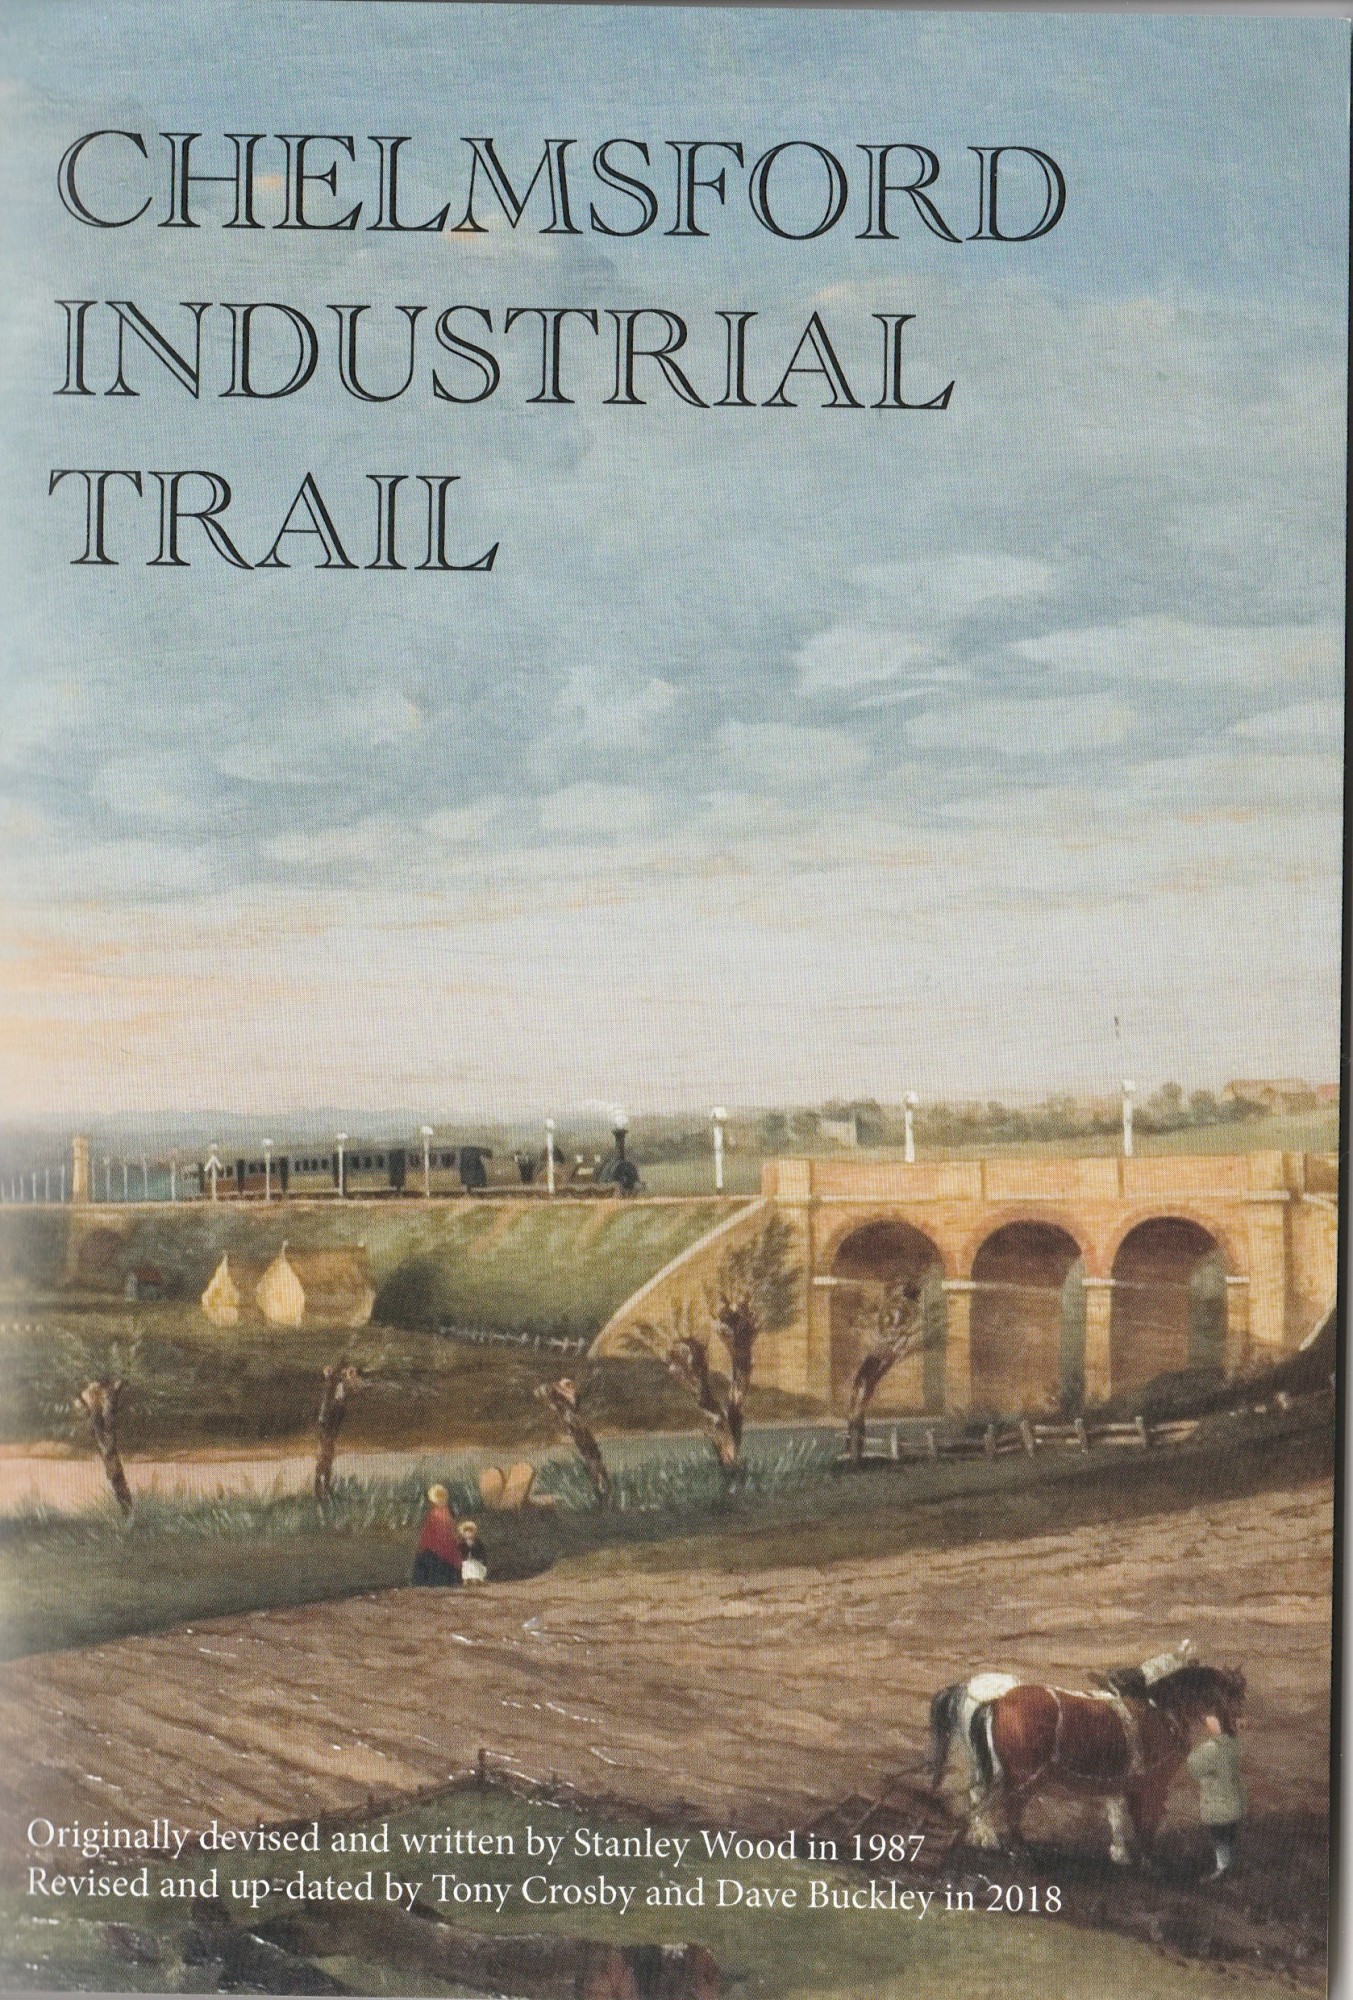 Chelmsford Industrial Trail eiag illustration 1